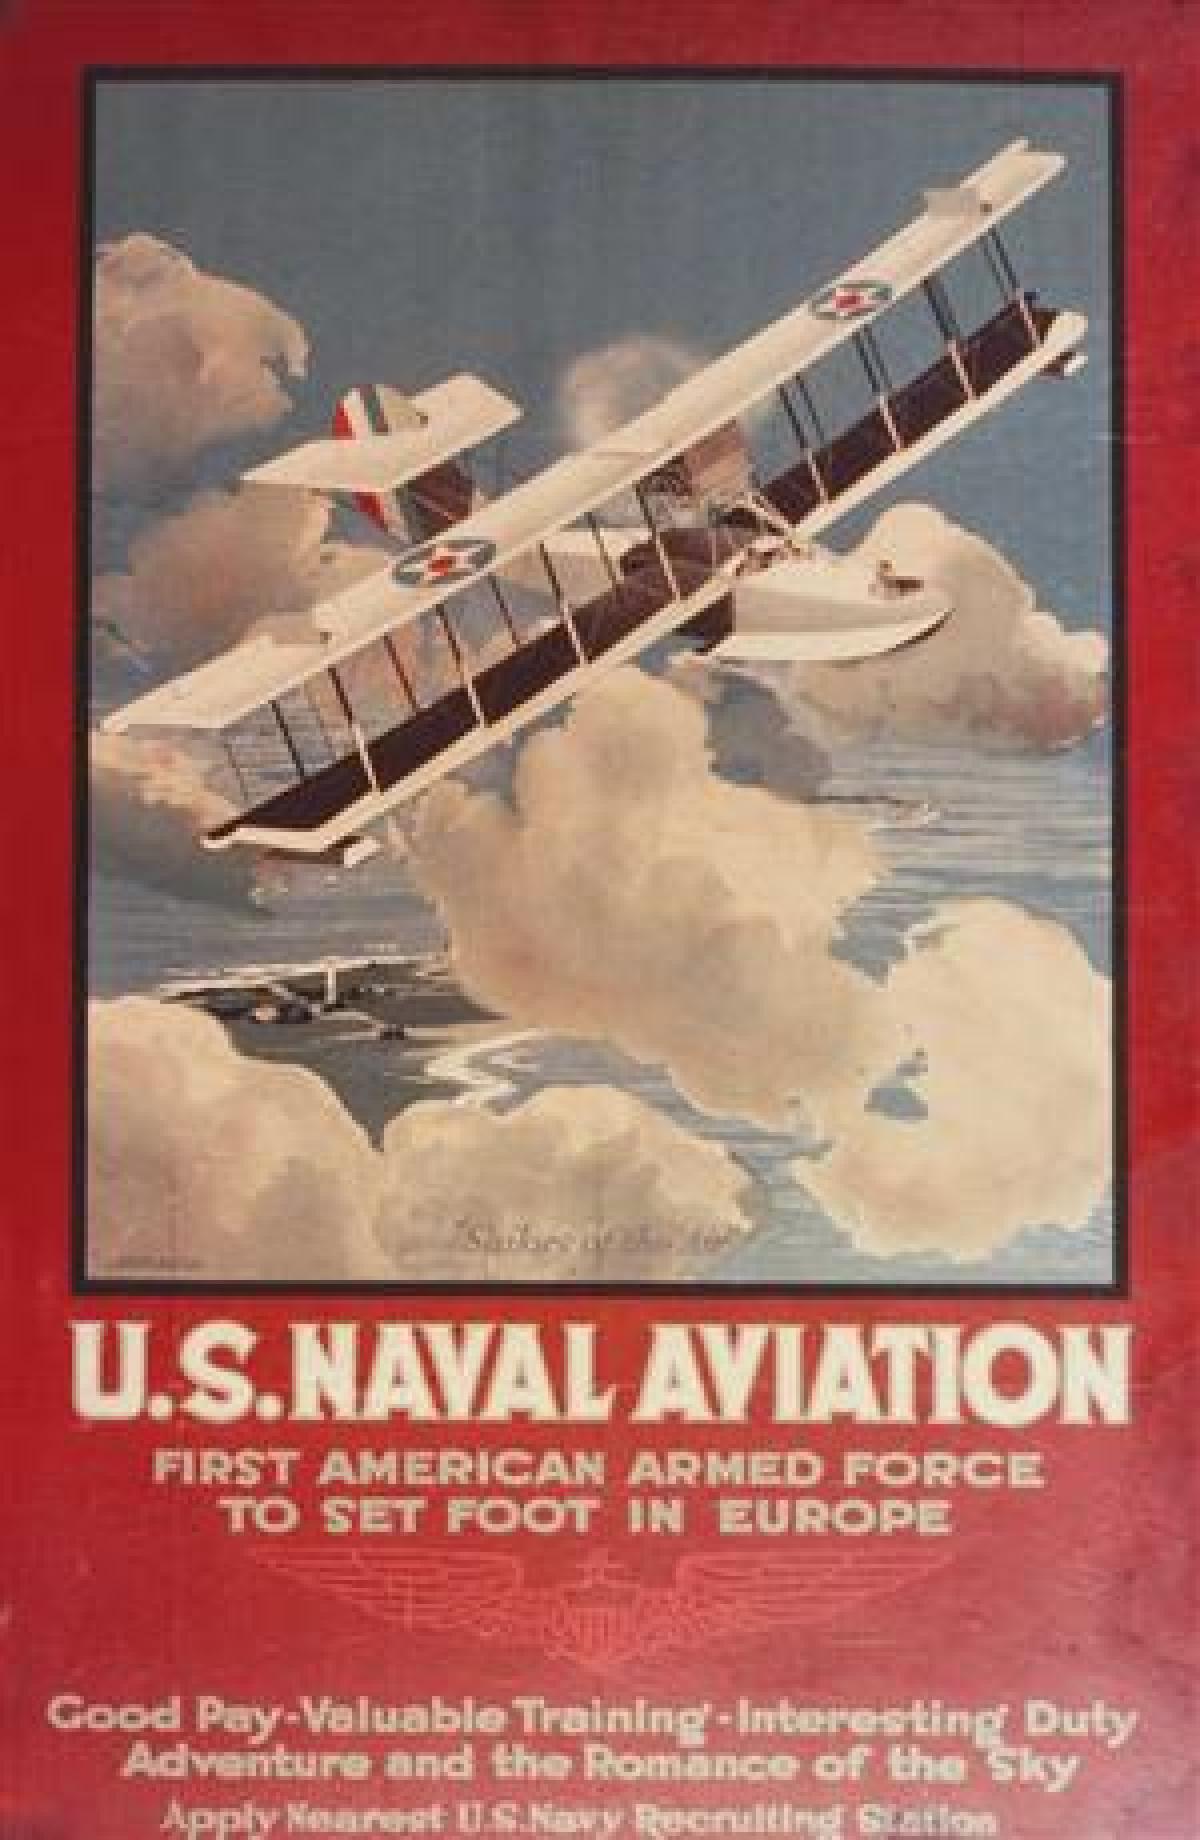 U.S. Naval Institute Photo Archive